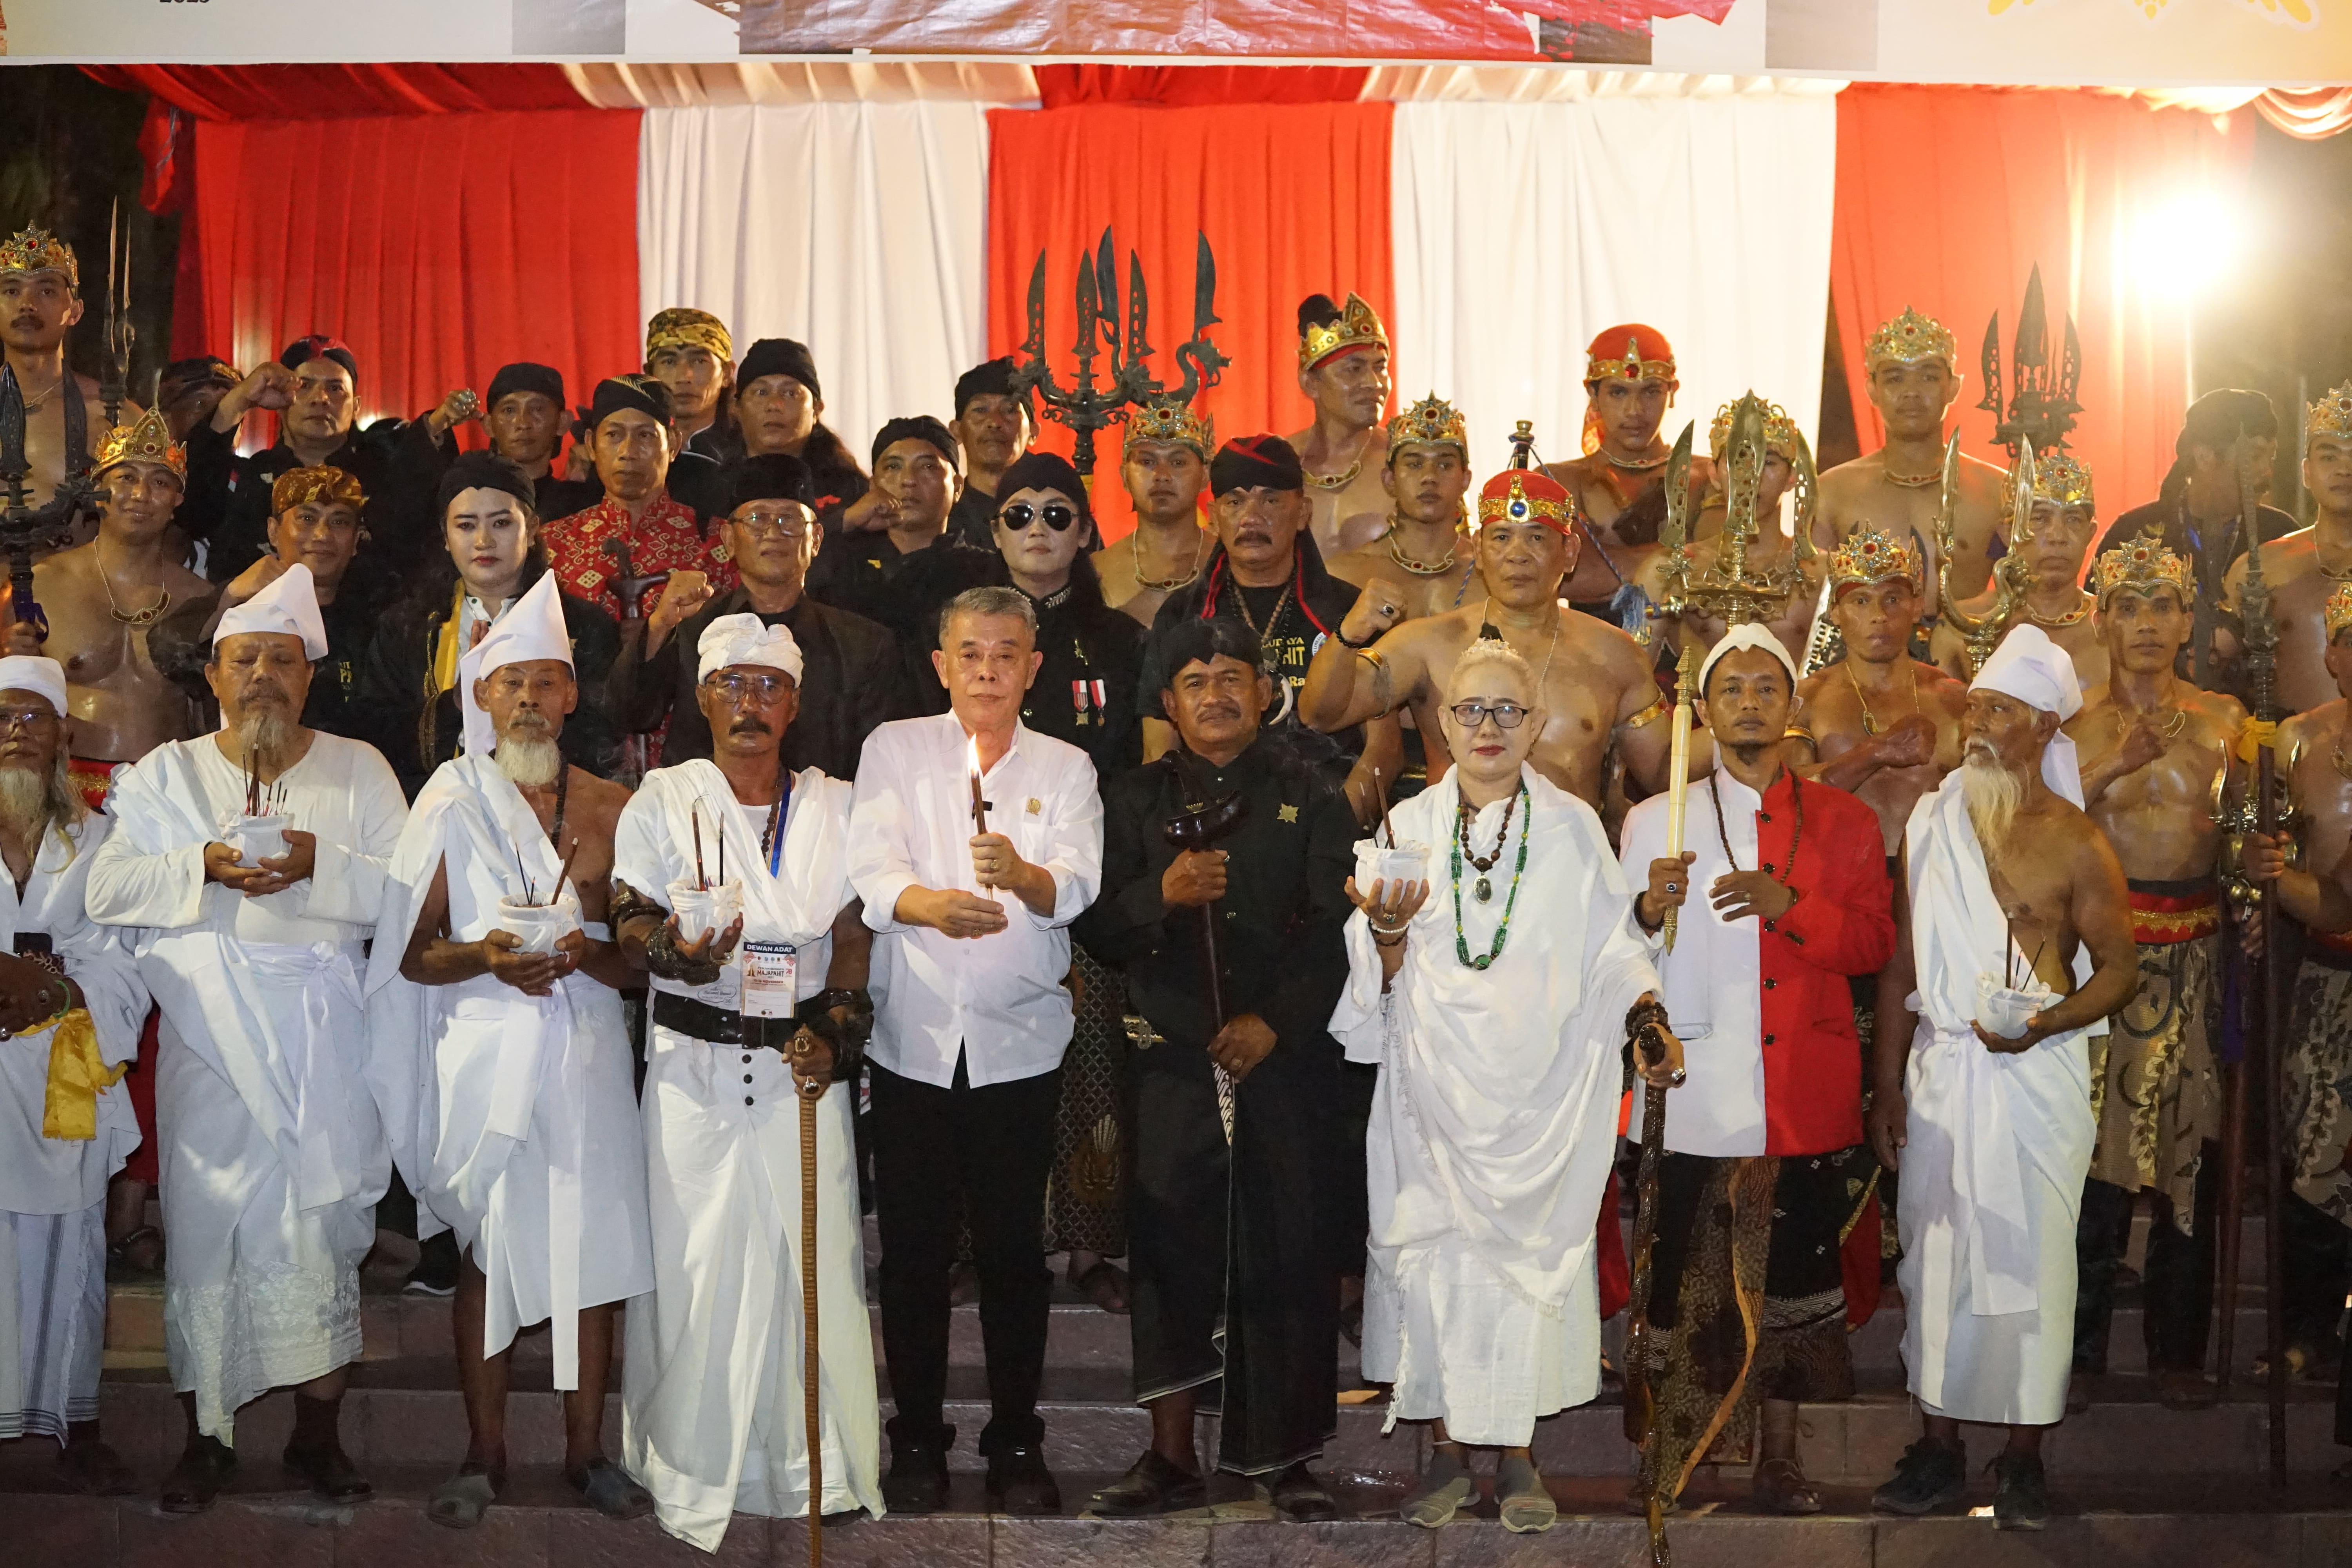 Ketua DPRD Provinsi Jawa Timur Kusnadi mengajak masyarakat untuk melestarikan dan meneladani budaya Majapahit, sehingga menjadi semangat bagi kemajuan bangsa Indonesia.